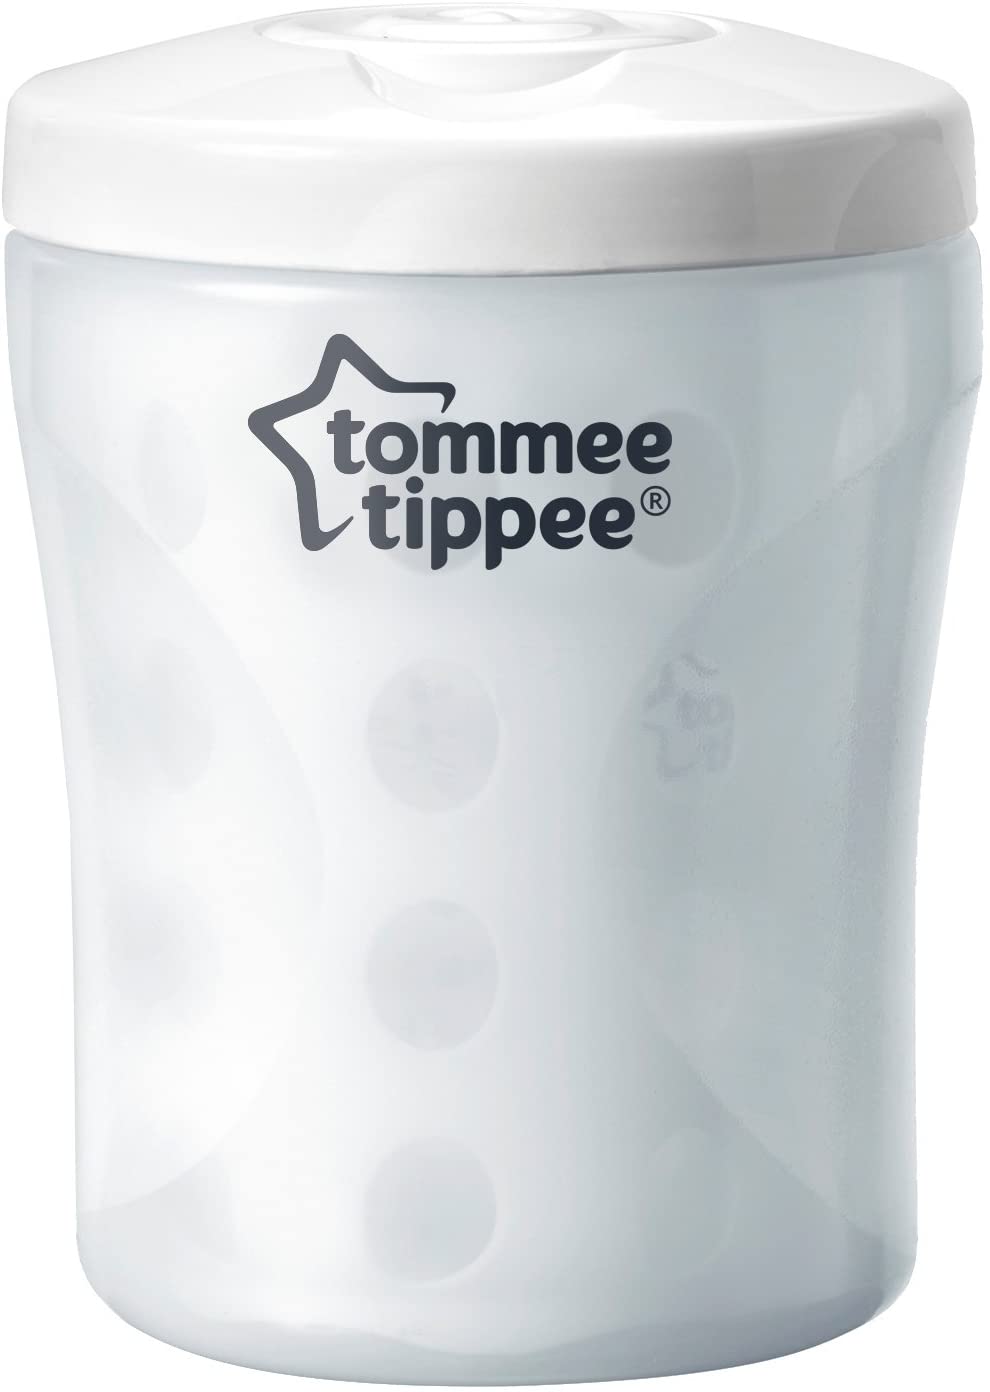 Tommee Tippee - Esterilizador de garrafa única